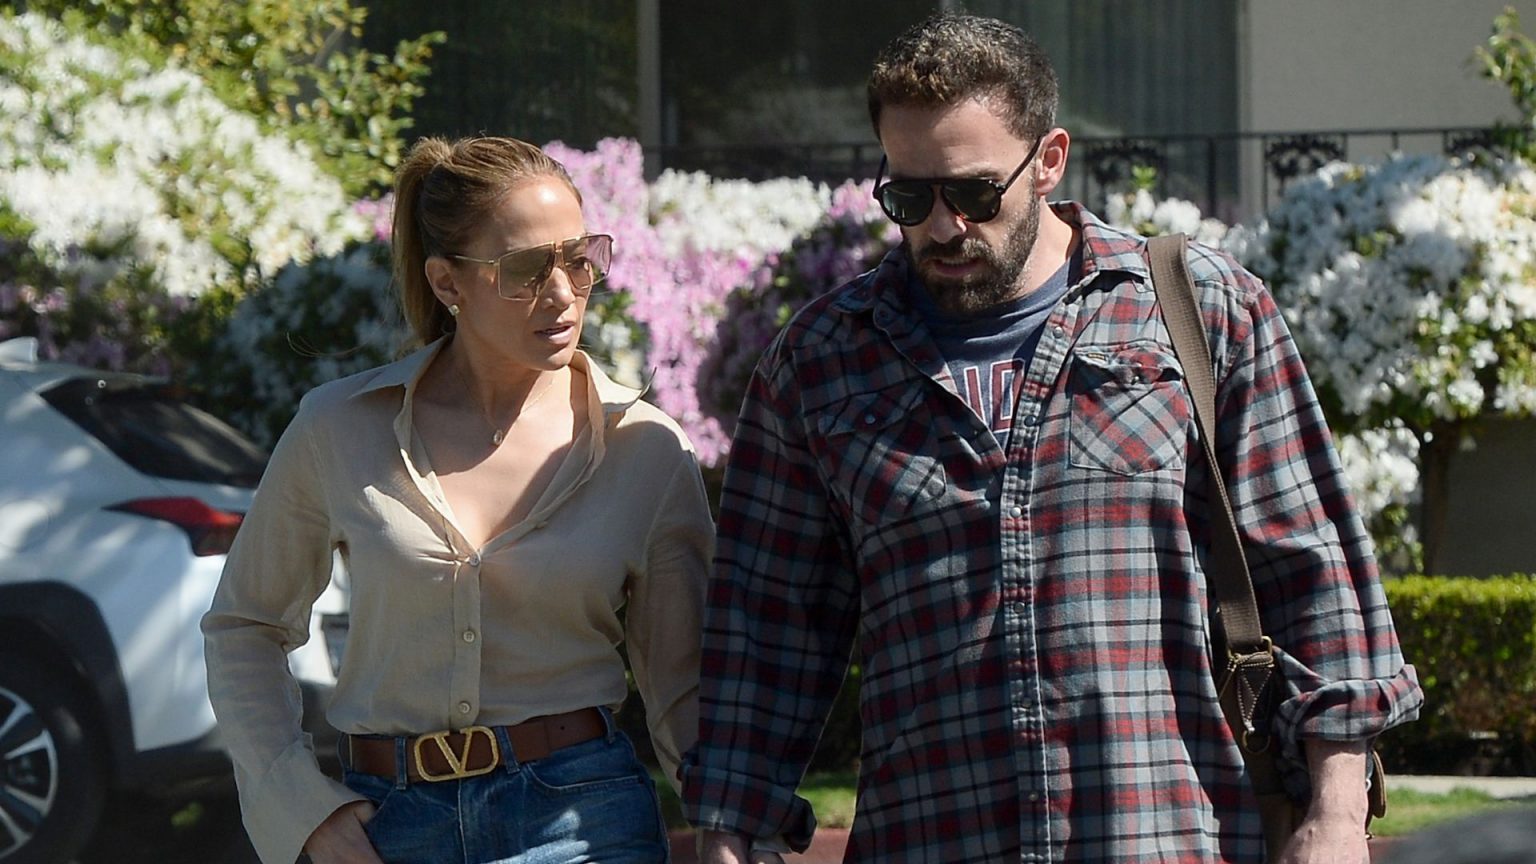 La boda de Jennifer Lopez y Ben Affleck, en jaque: la madre del actor tiene un accidente